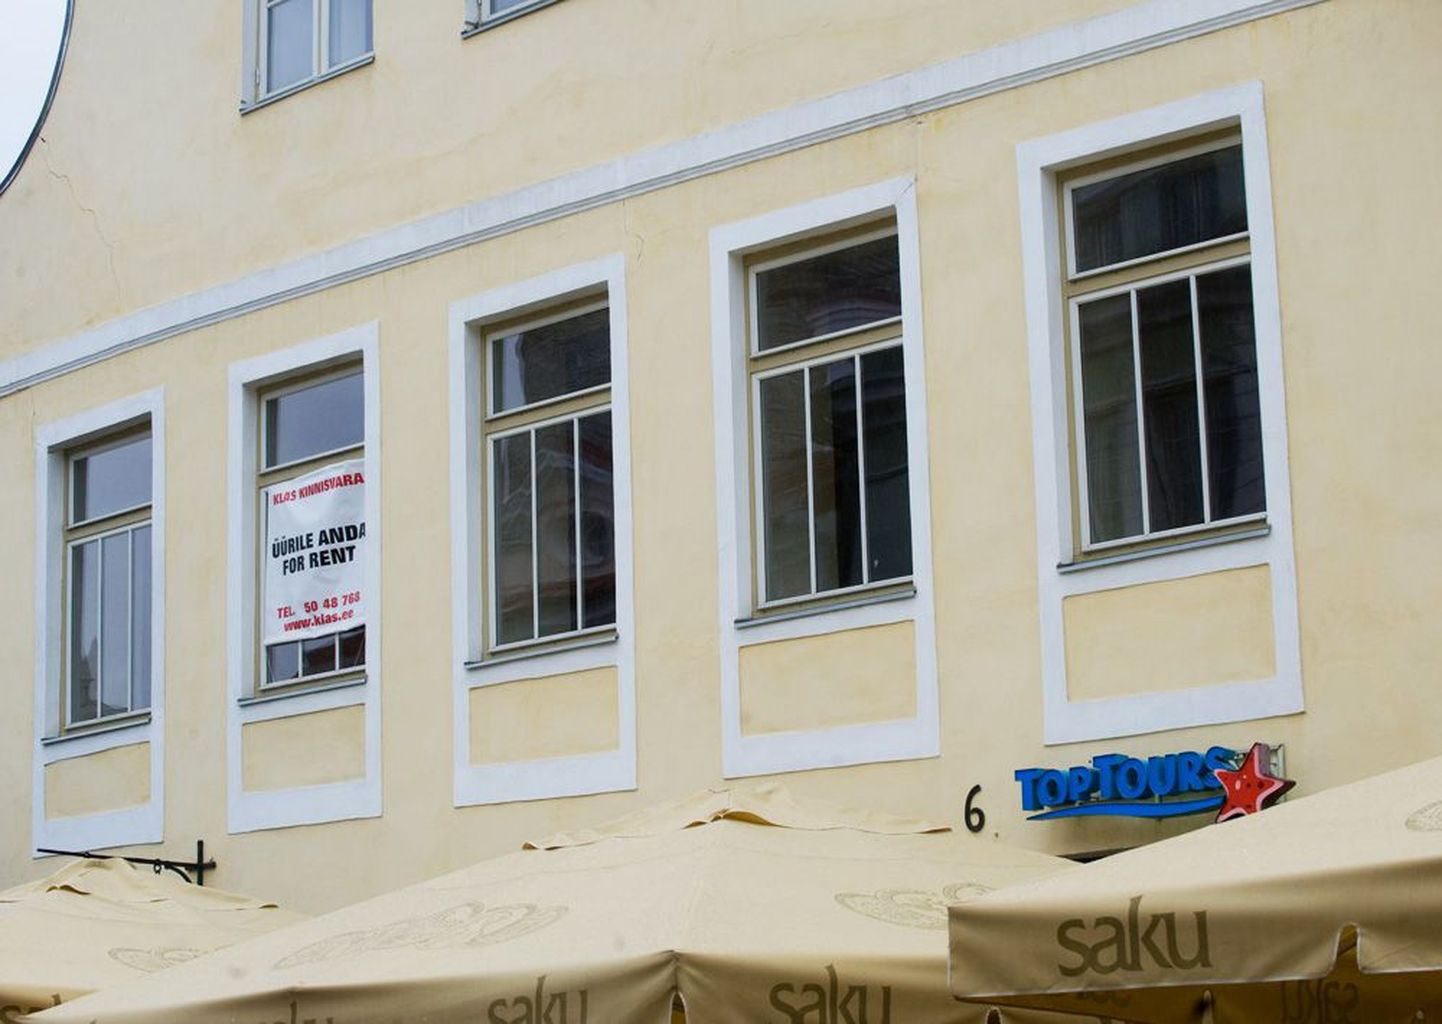 Toptoursi kontor Tallinna vanalinnas Vana-Viru tänaval on suletud alates reede õhtust.